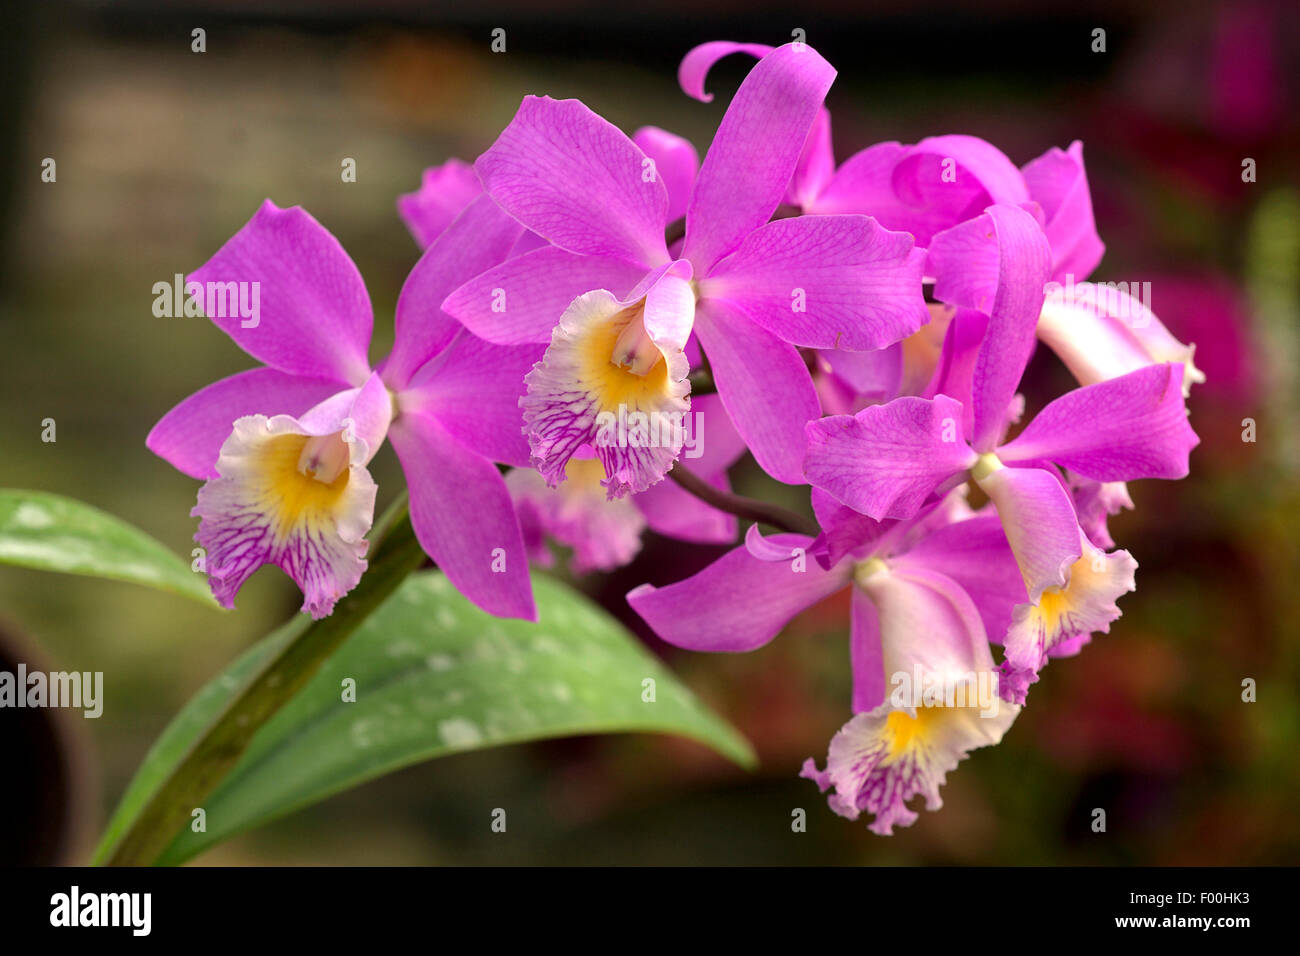 Cattleya (Cattleya harrisoniae), flowers Stock Photo